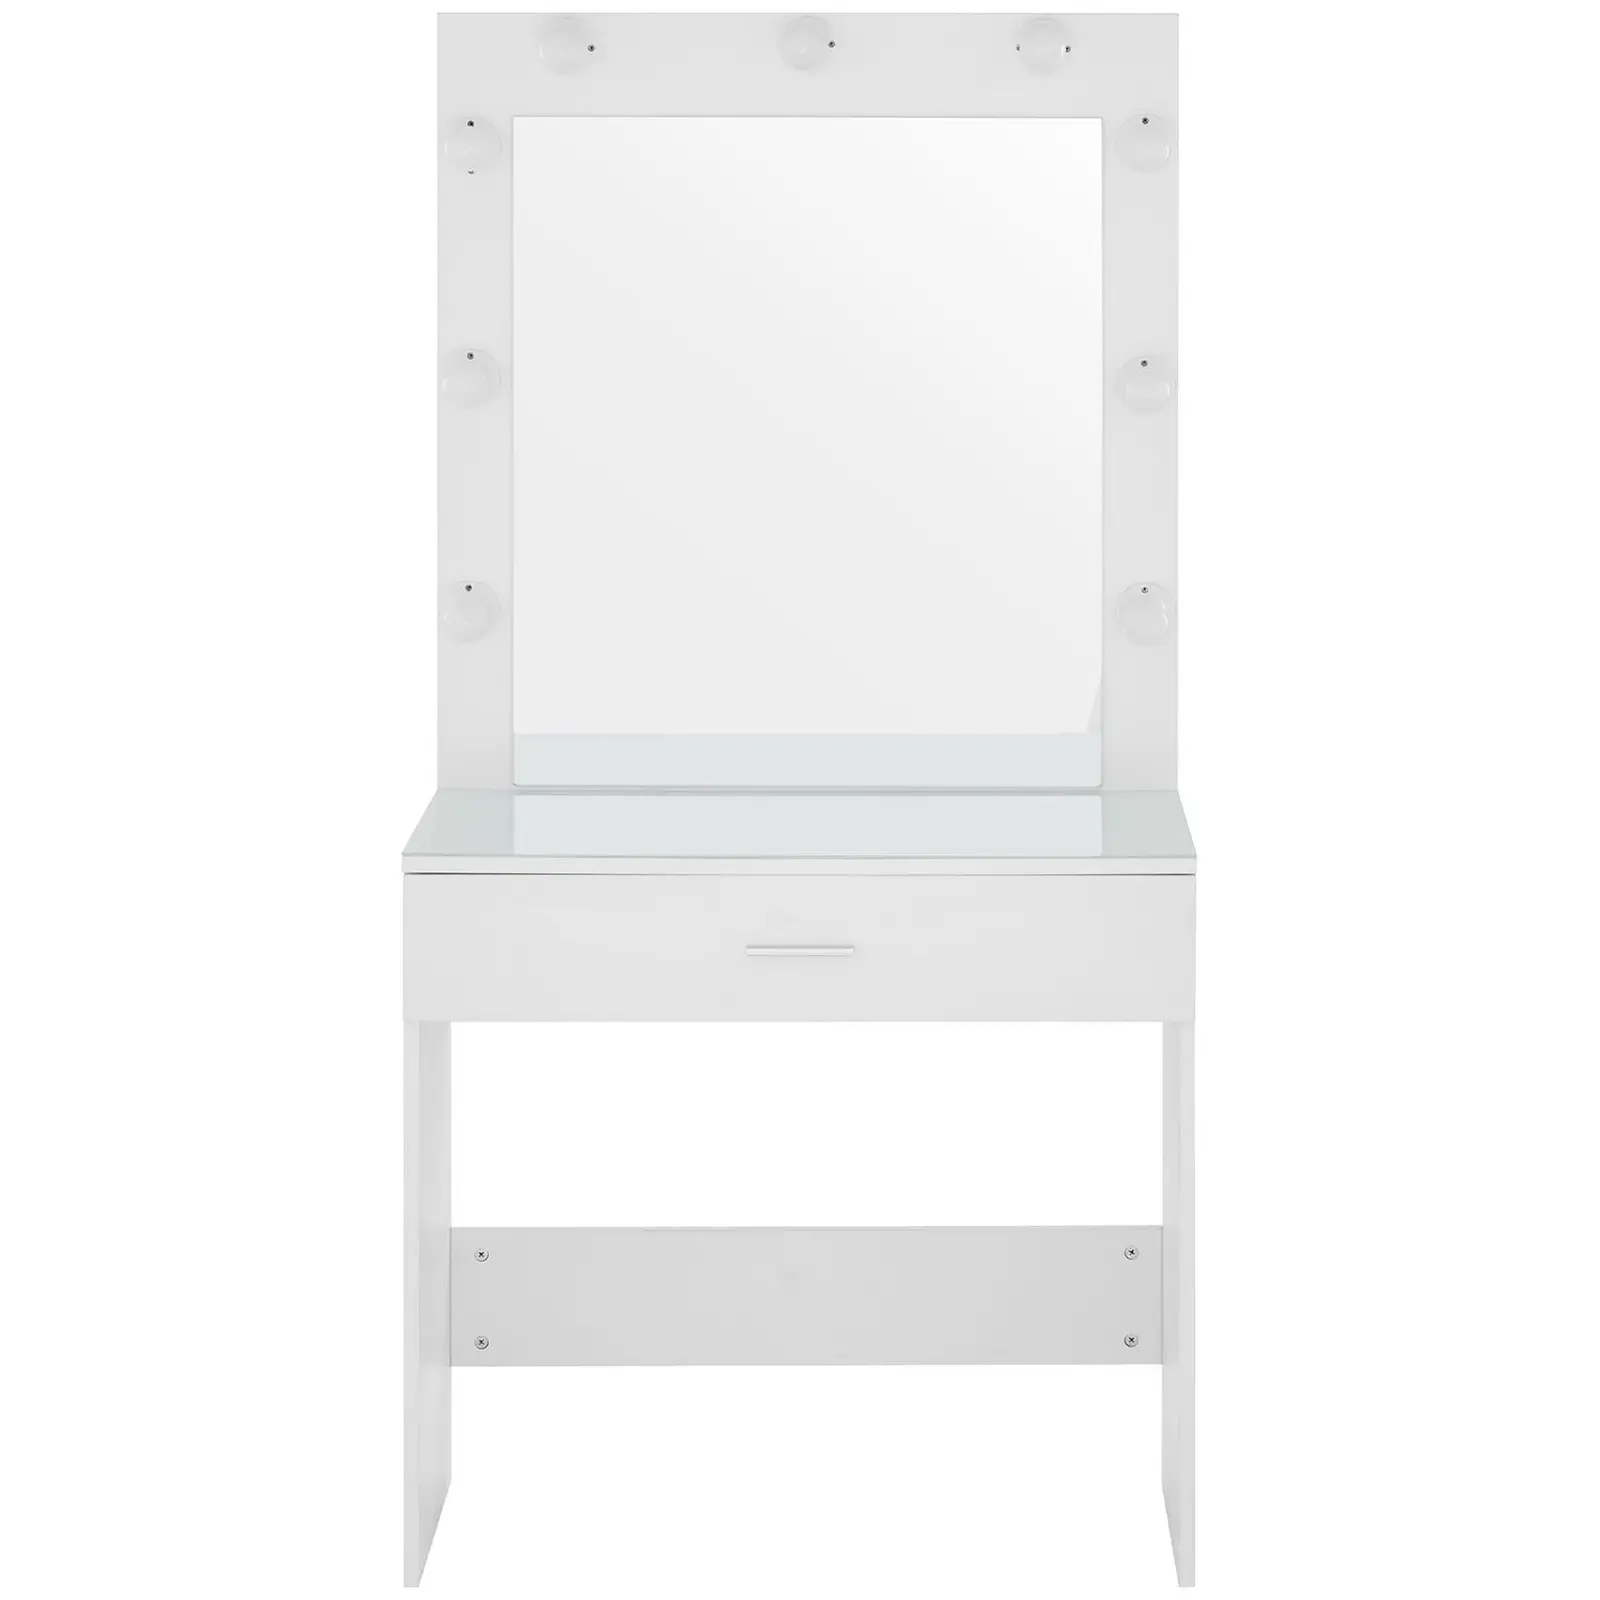 Sminkbord med spegel och lampor - 80 x 40 x 160 cm - Vitt